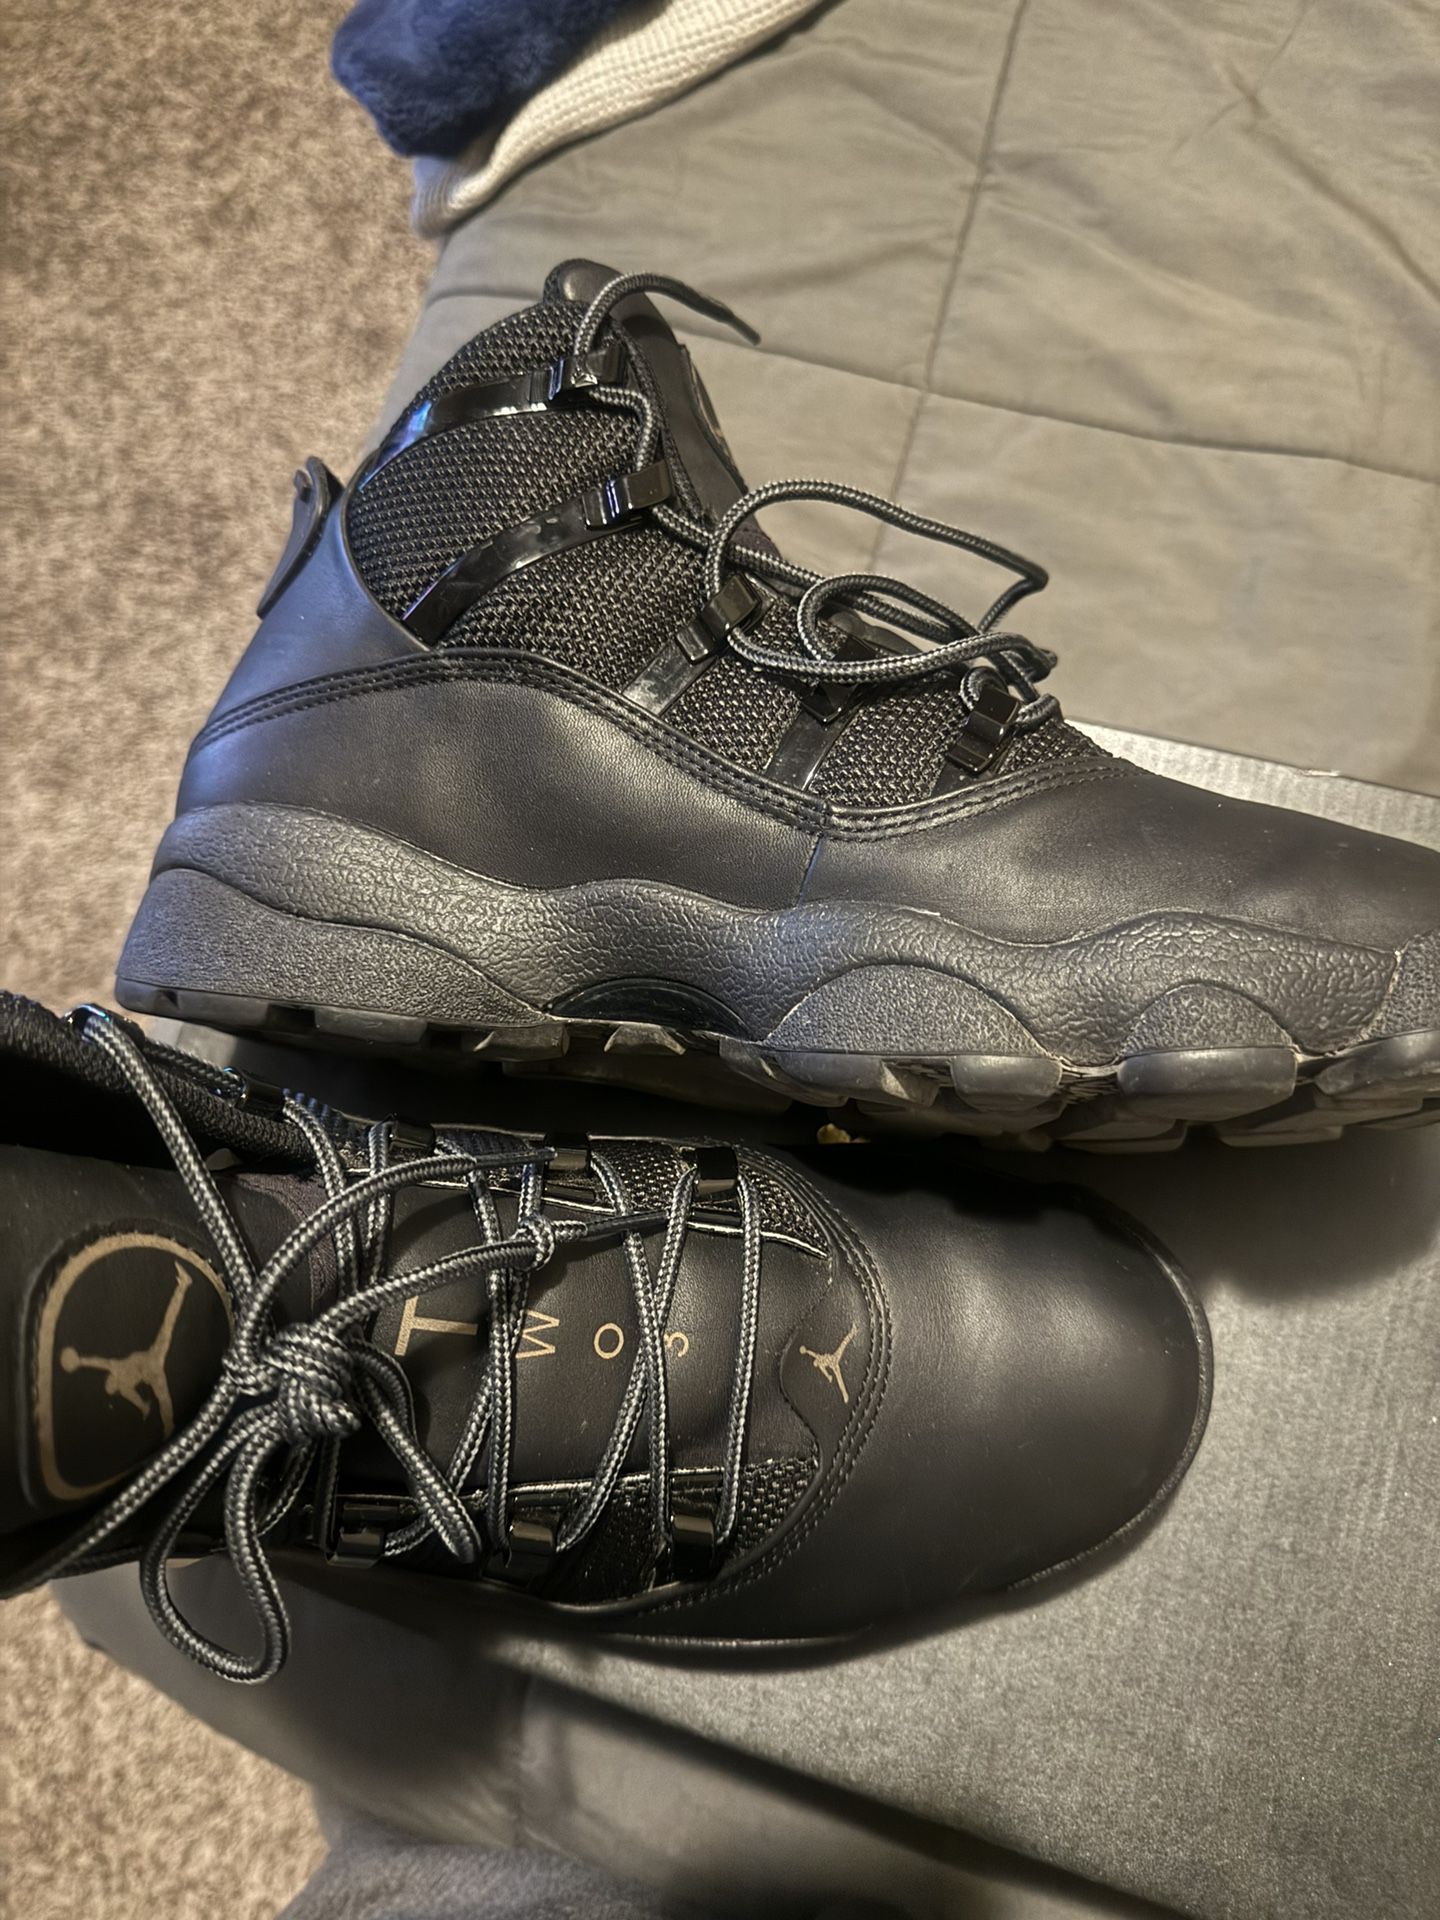 Jordan Winterized 6 Rings "Black/Rustic" Men's Boot